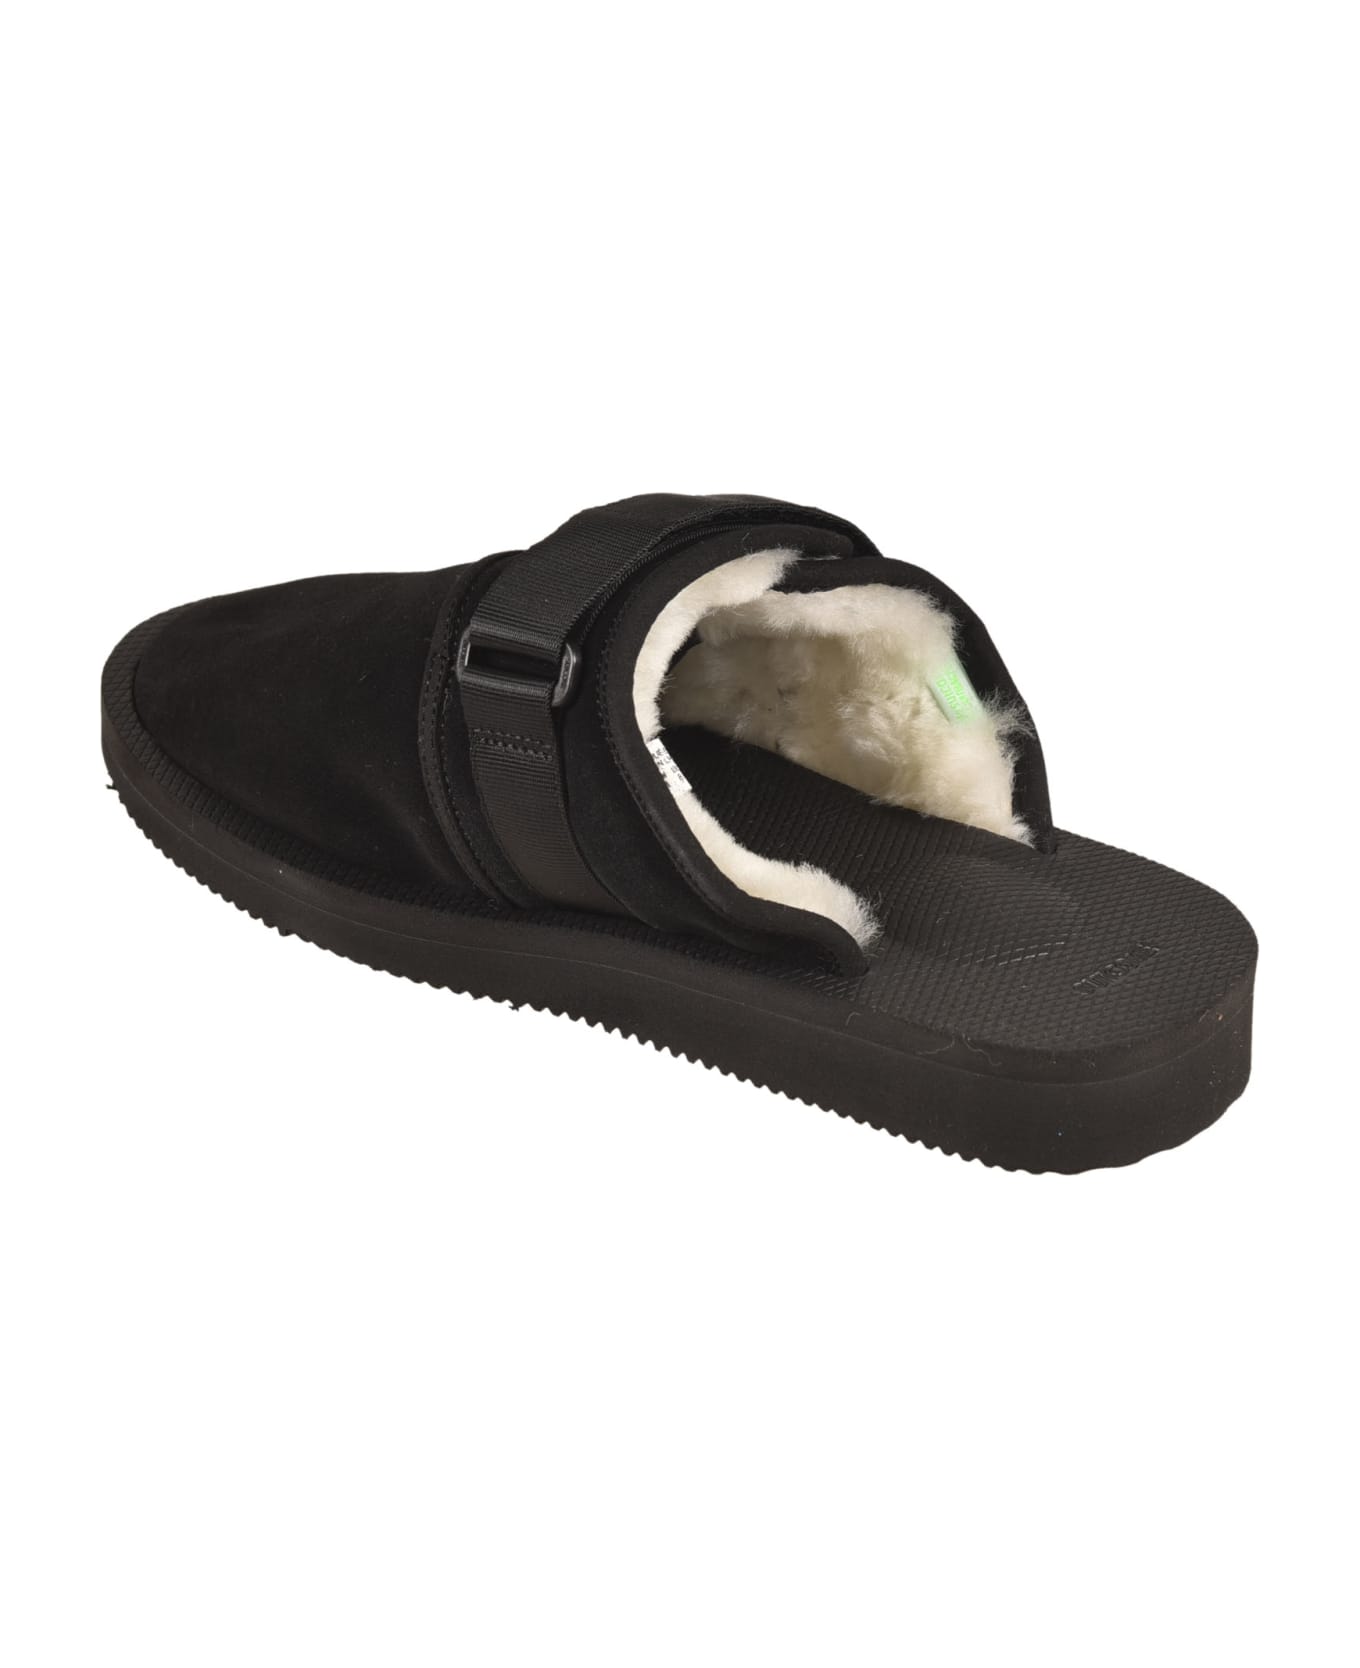 SUICOKE Fur Applique Side Strap Sandals - Black その他各種シューズ